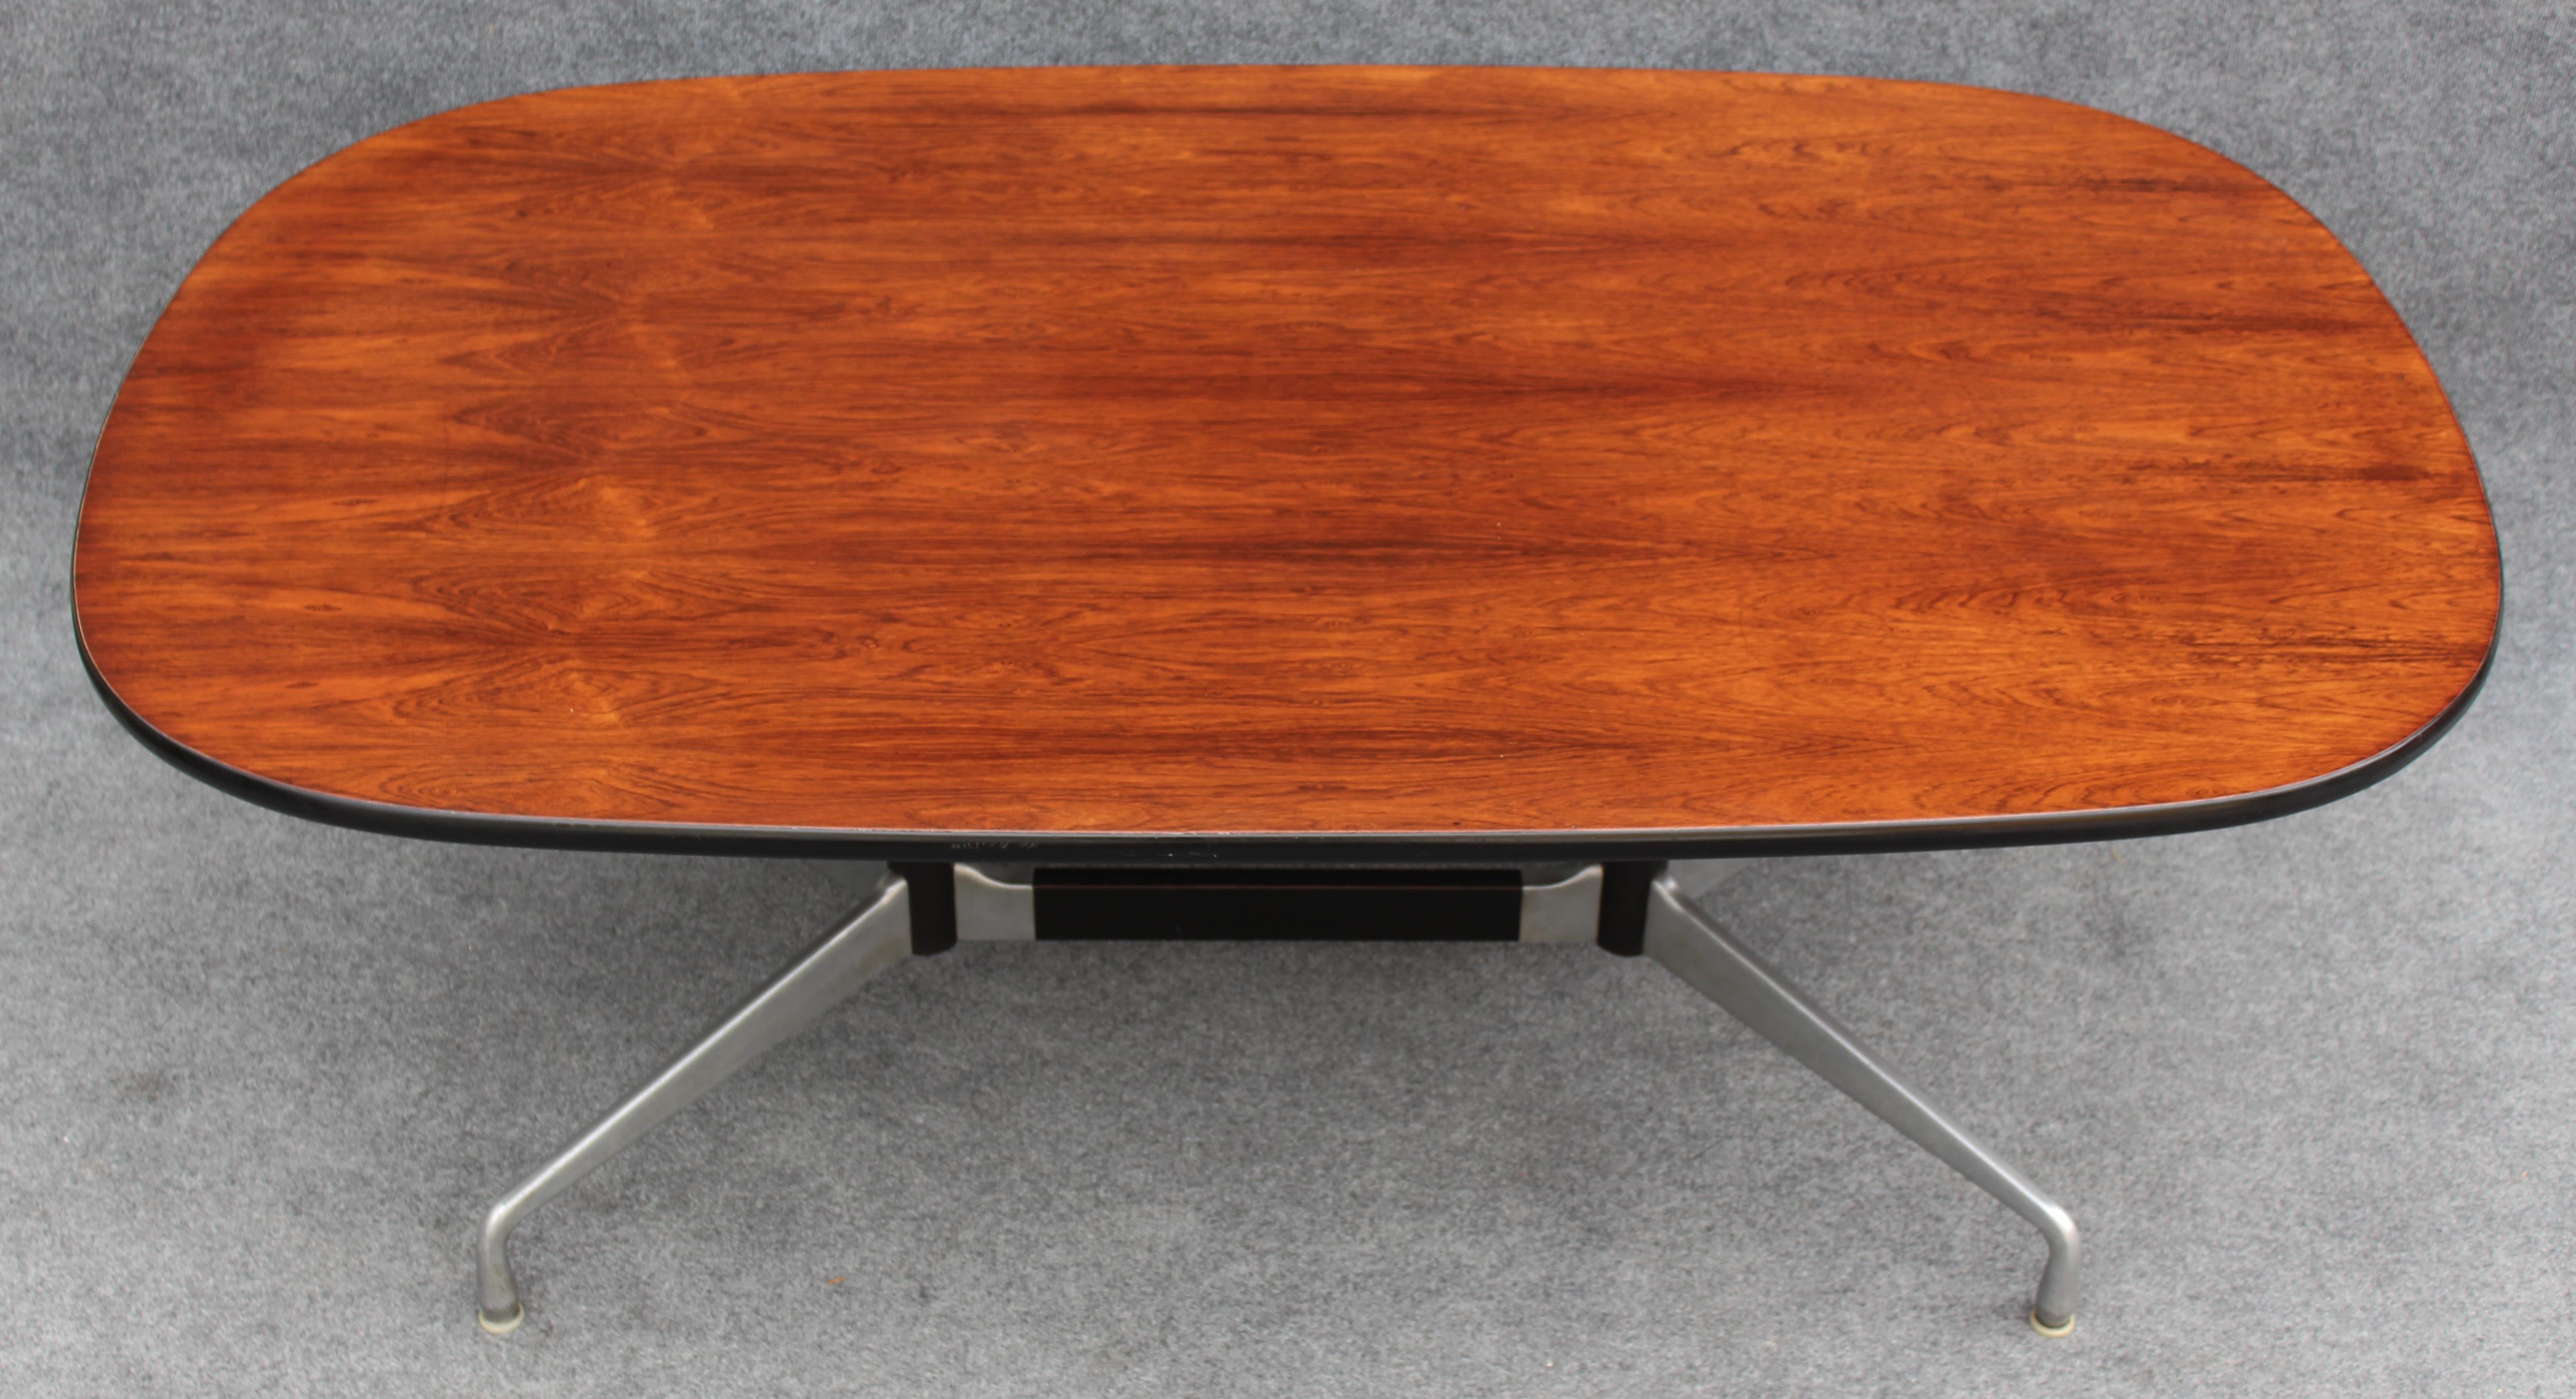 Dieser seltene Tisch wurde von Charles und Ray Eames in den frühen 1960er Jahren für Herman Miller entworfen, dem damaligen Hersteller aller Eames-Designs. Sie wurde damals nicht in großem Umfang hergestellt, und es gab nur sehr wenige Exemplare.